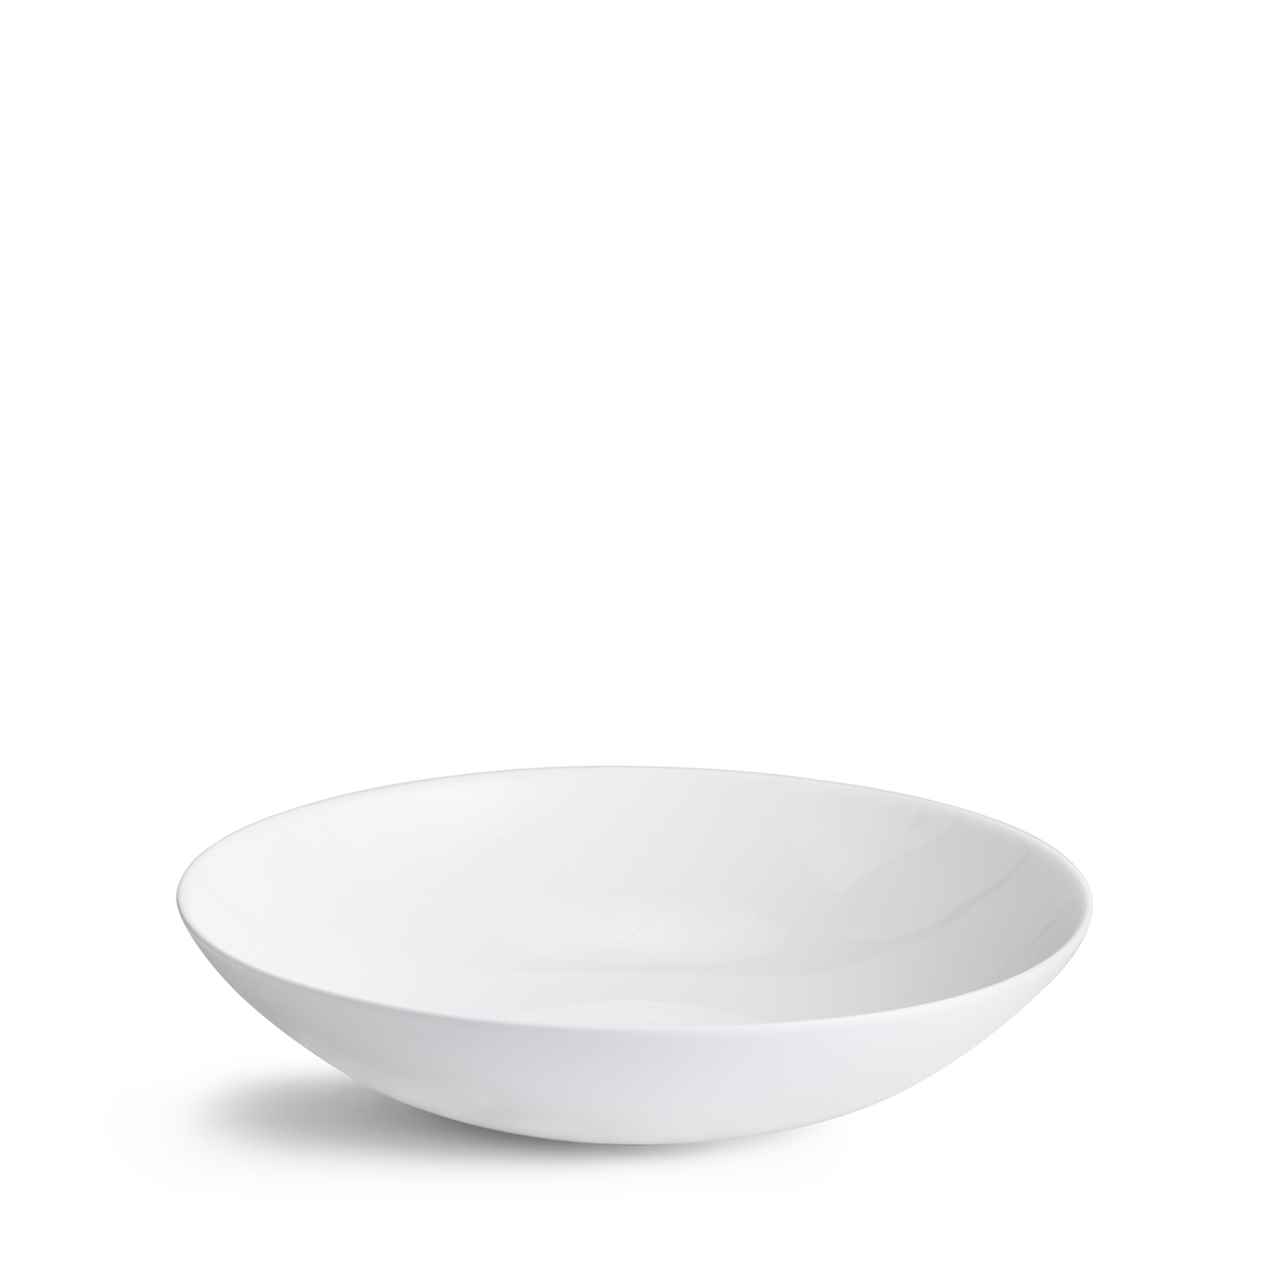 Jasper Conran White Pasta Bowl 25cm